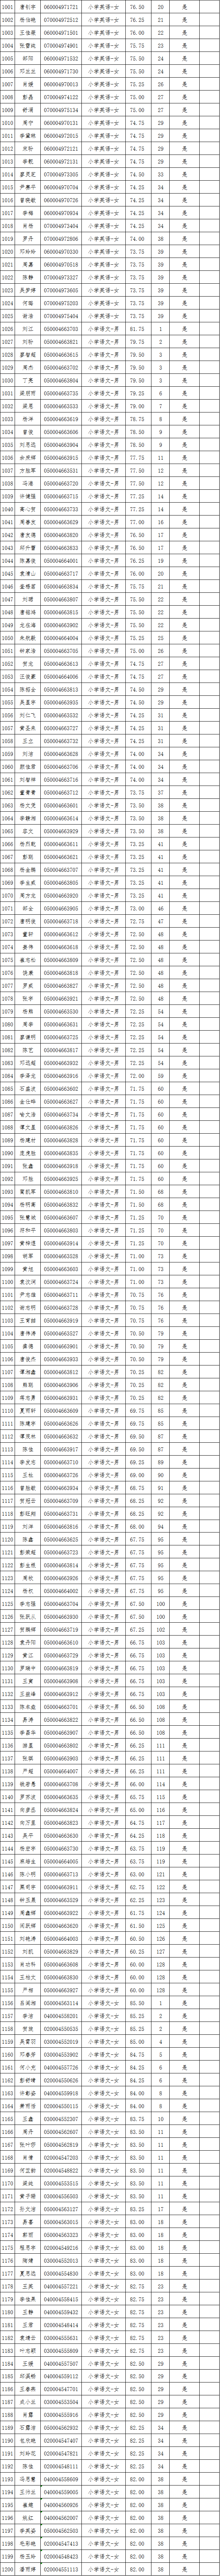 2021年长沙县第—批教师招聘入围试教人员名单公示(图15)